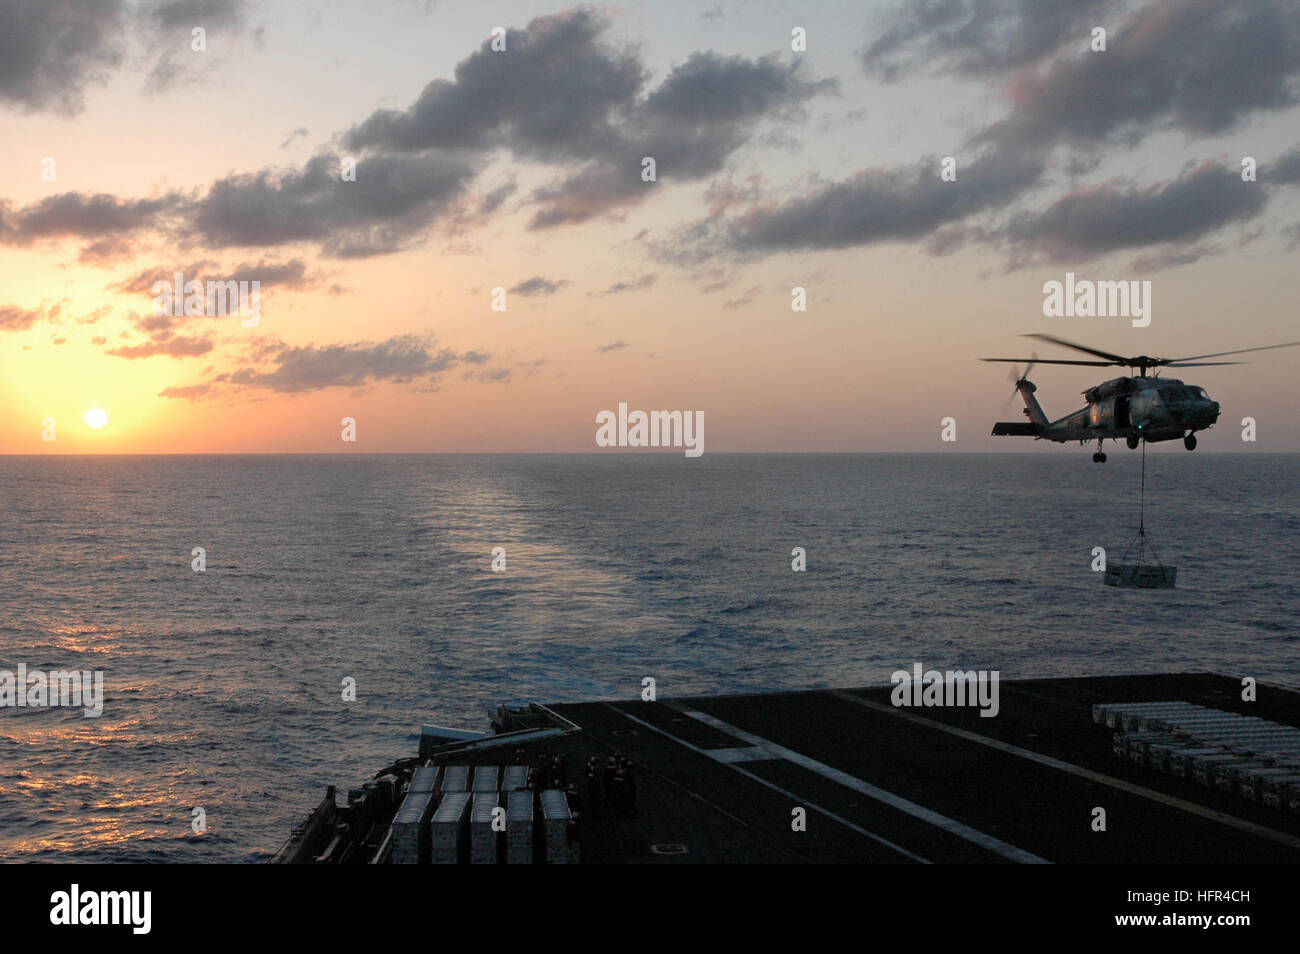 070405-N-1635S-006 sul Mare del Sud della Cina (apr. 5, 2007) - Con il sole che tramonta dietro la portaerei USS Ronald Reagan (CVN 76), un HH-60H Seahawk dal 'Cavalieri Neri' di elicottero Anti-Submarine Squadron (HS) 4 sale al di sopra del ponte di volo durante un'ordnance offload di evoluzione con i militari Sealift Command (MSC) munizioni nave USNS selce (T-AE 32). Aviation Ordnancemen scaricata oltre 126 barattoli di munizioni durante l'evoluzione. Il Ronald Reagan Carrier Strike gruppo è in corso su una distribuzione di pompaggio a sostegno degli Stati Uniti per le operazioni militari nel Pacifico occidentale. Ufficiale DEGLI STATI UNITI Nav Foto Stock